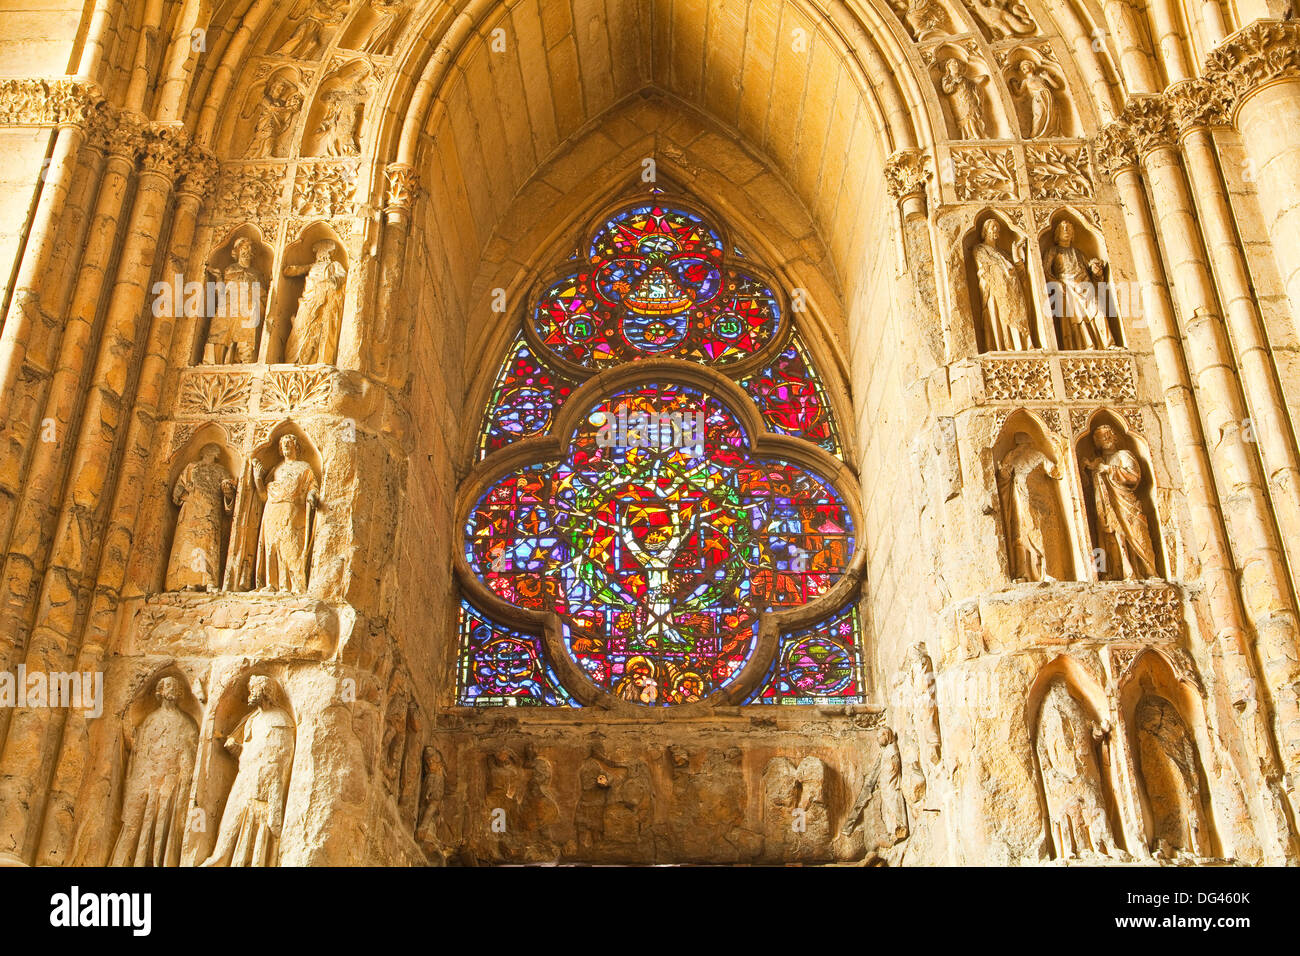 Sculptures en haut-relief à l'intérieur de Notre Dame de la cathédrale de Reims, l'UNESCO World Heritage Site, Reims, Champagne-Ardenne, France Banque D'Images